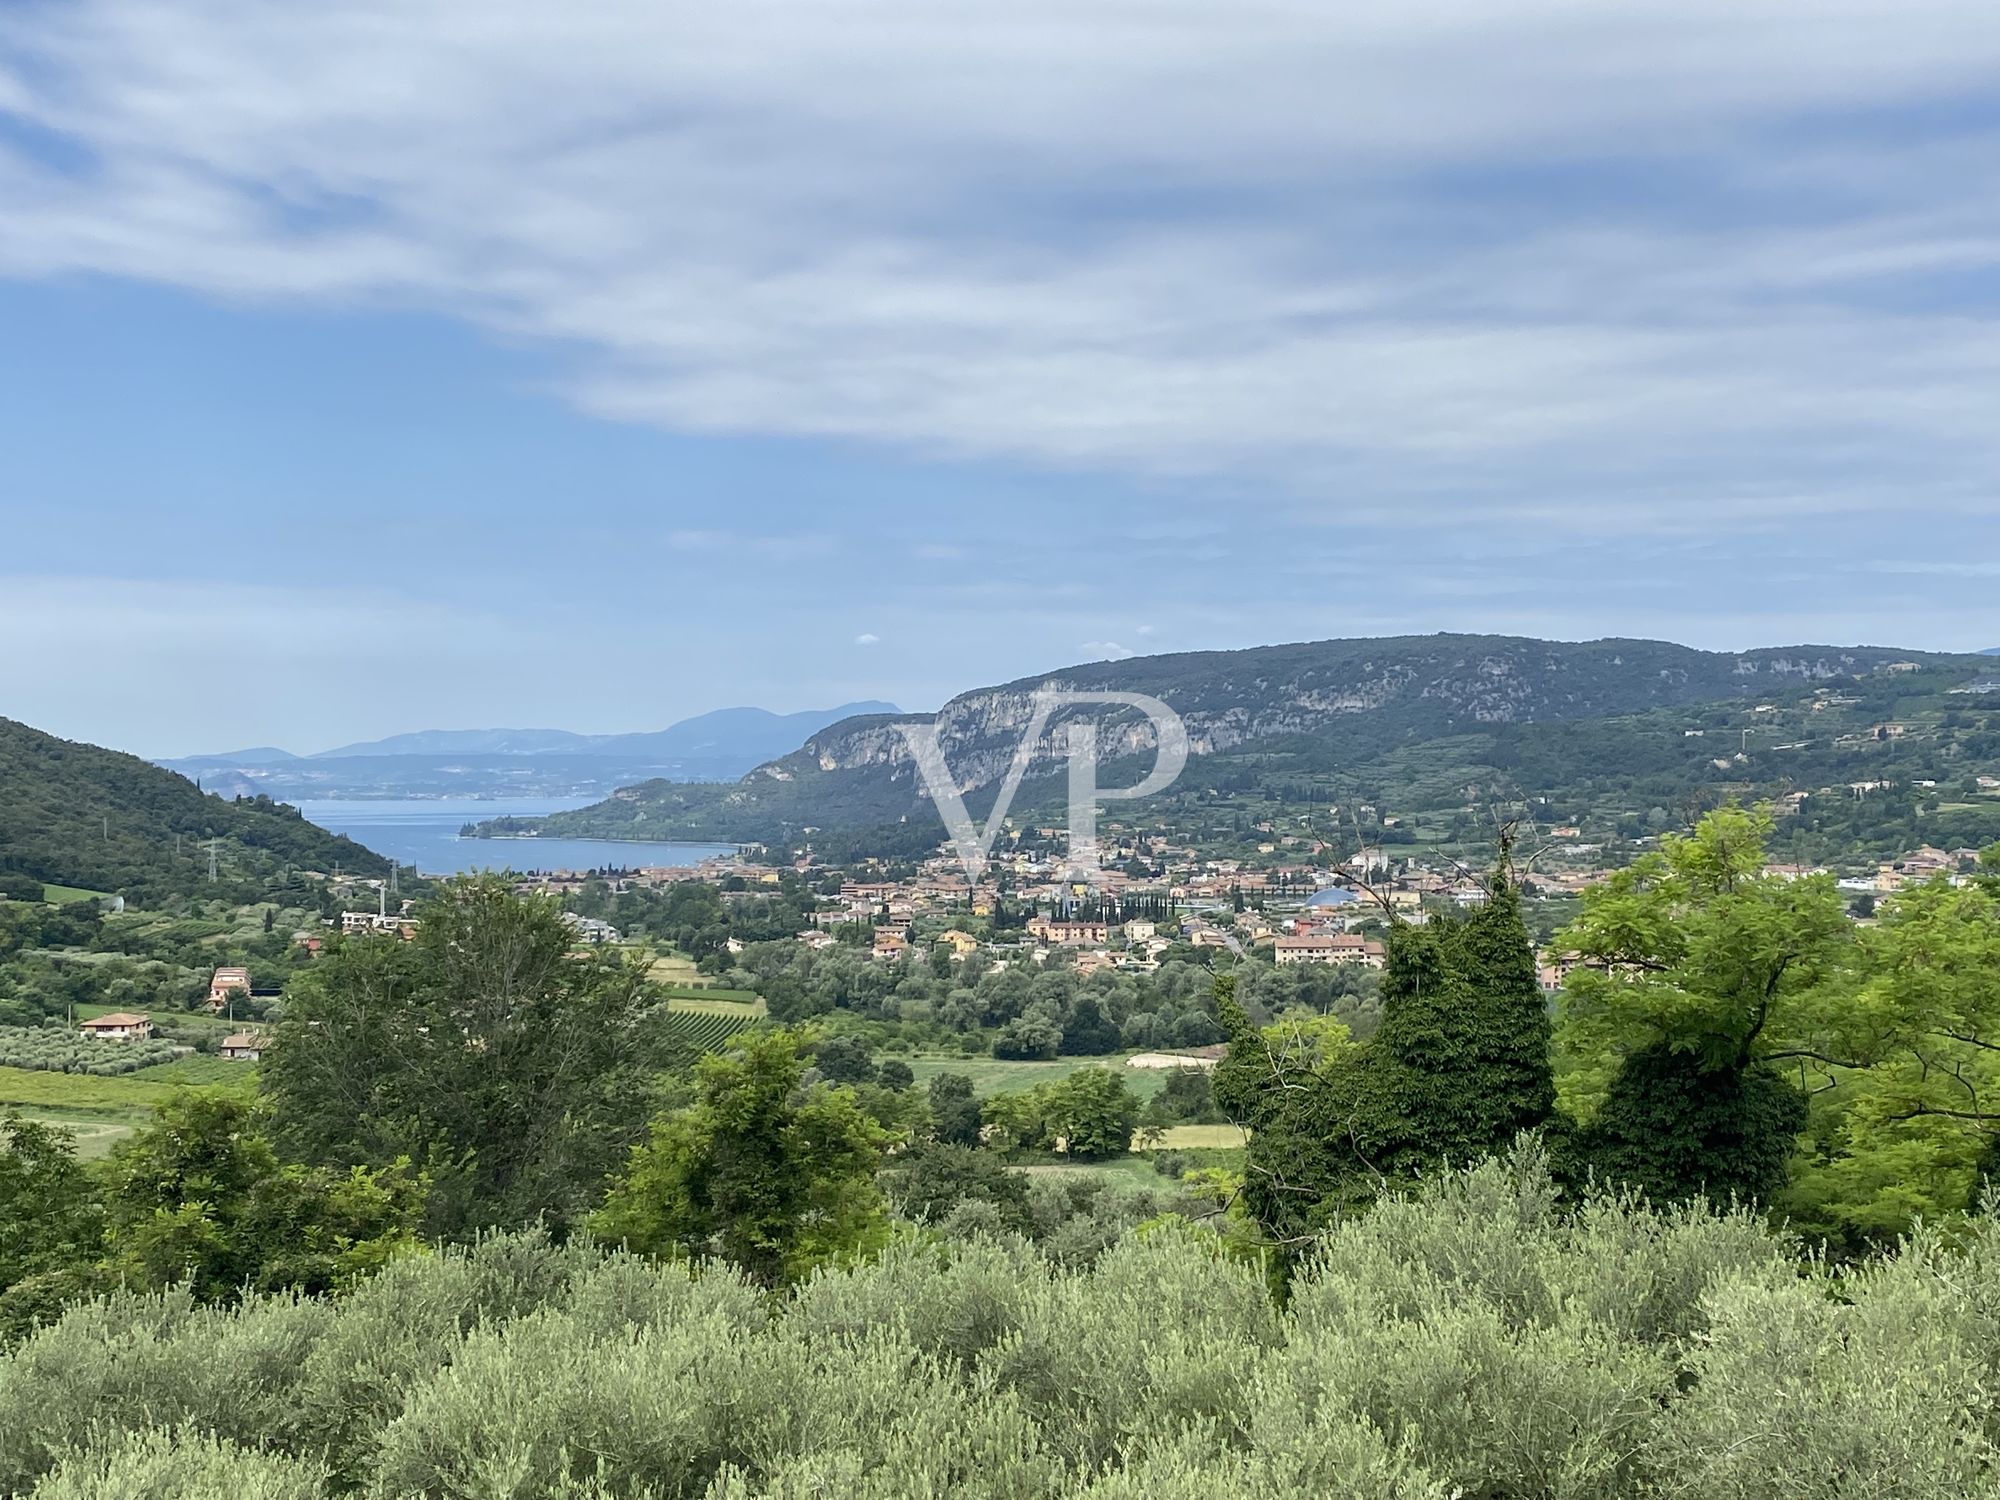 Traumhafter Blick auf die Bucht von Garda - wunderschöne Umgebungsbebauung in mediterraner Natur und eigene Produktion von Olivenöl